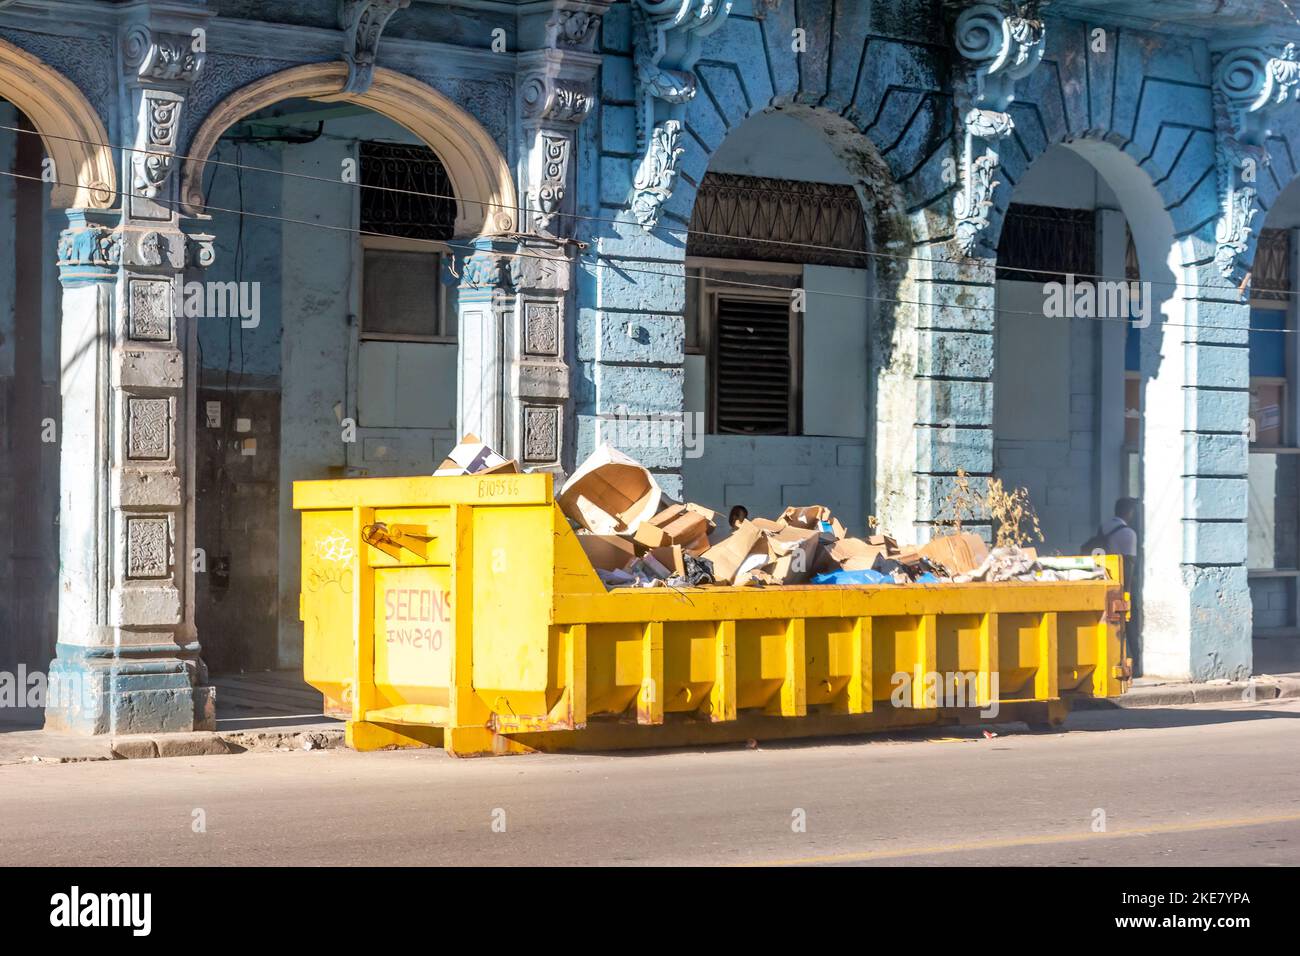 En la calle de una ciudad hay un contenedor metálico grande con el propósito de recoger basura. En el fondo hay un antiguo edificio arquitectónico. Foto de stock